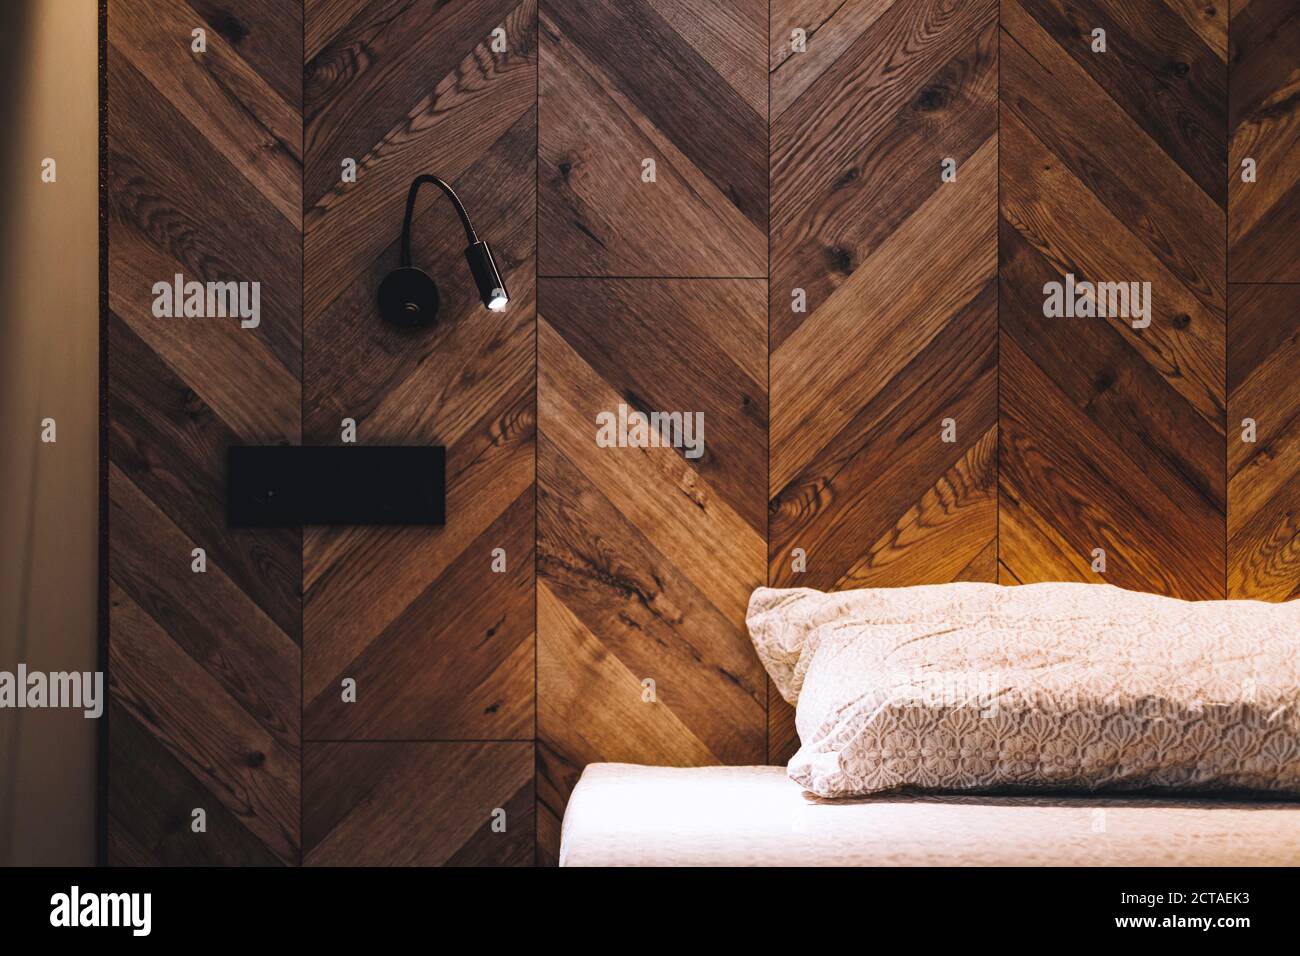 Schlafzimmer in der Nacht mit Licht von Wand Blitz. Weiße Bettwäsche auf dem Bett. Stockfoto